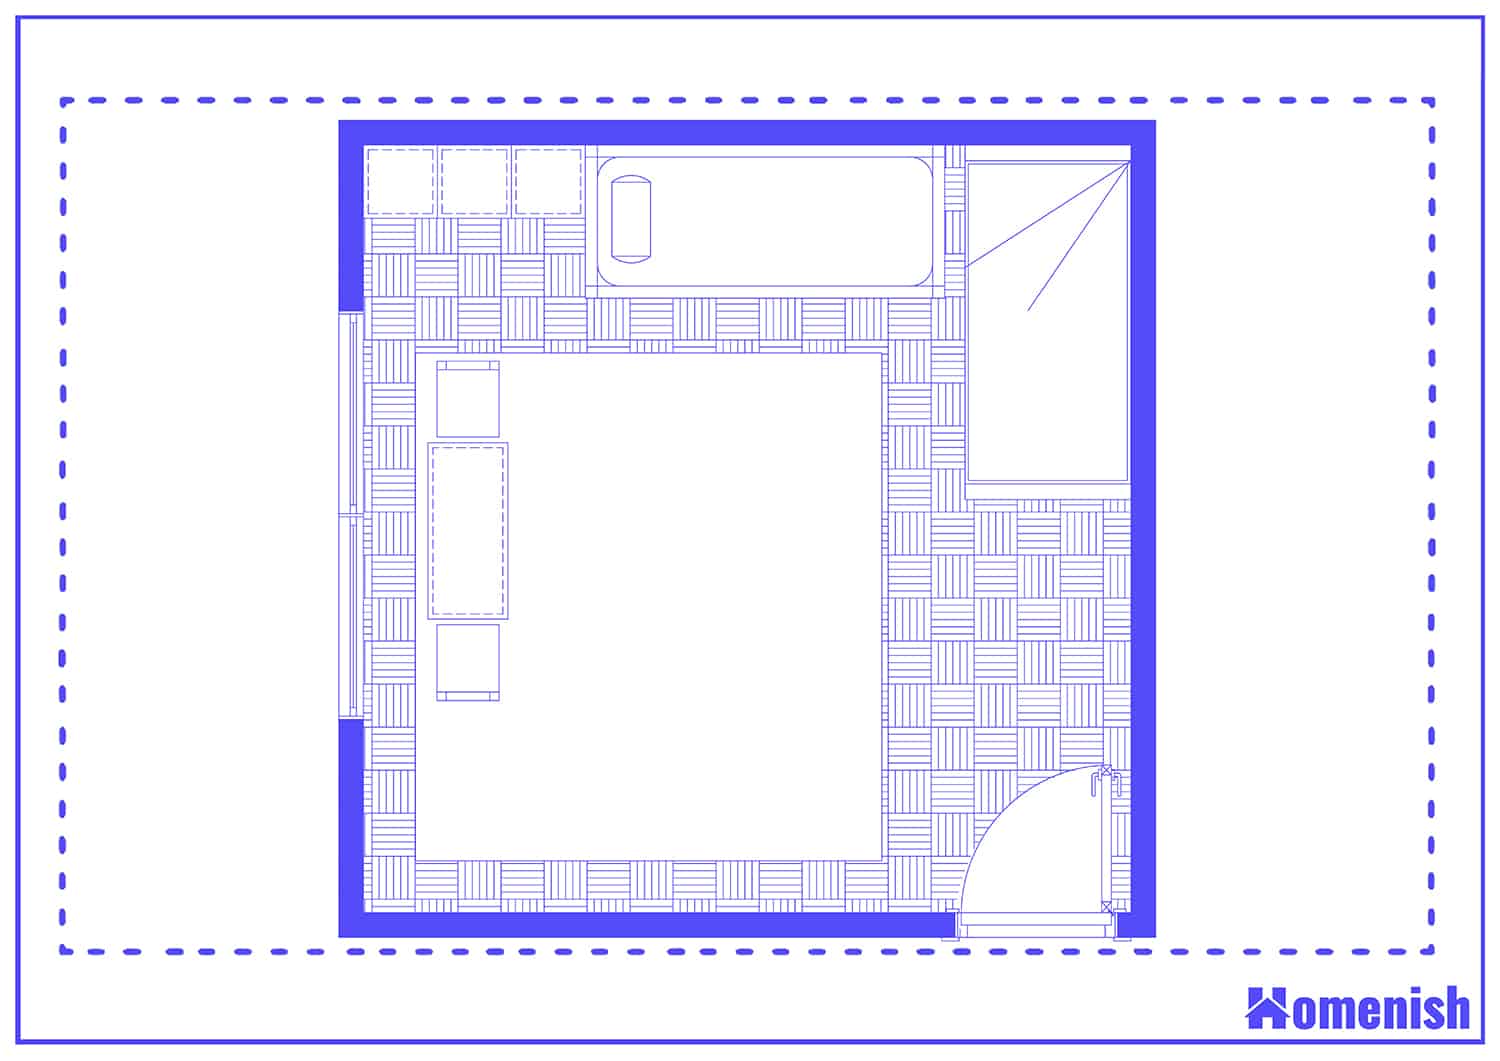 Multiple Bed Nursery Floor Plan